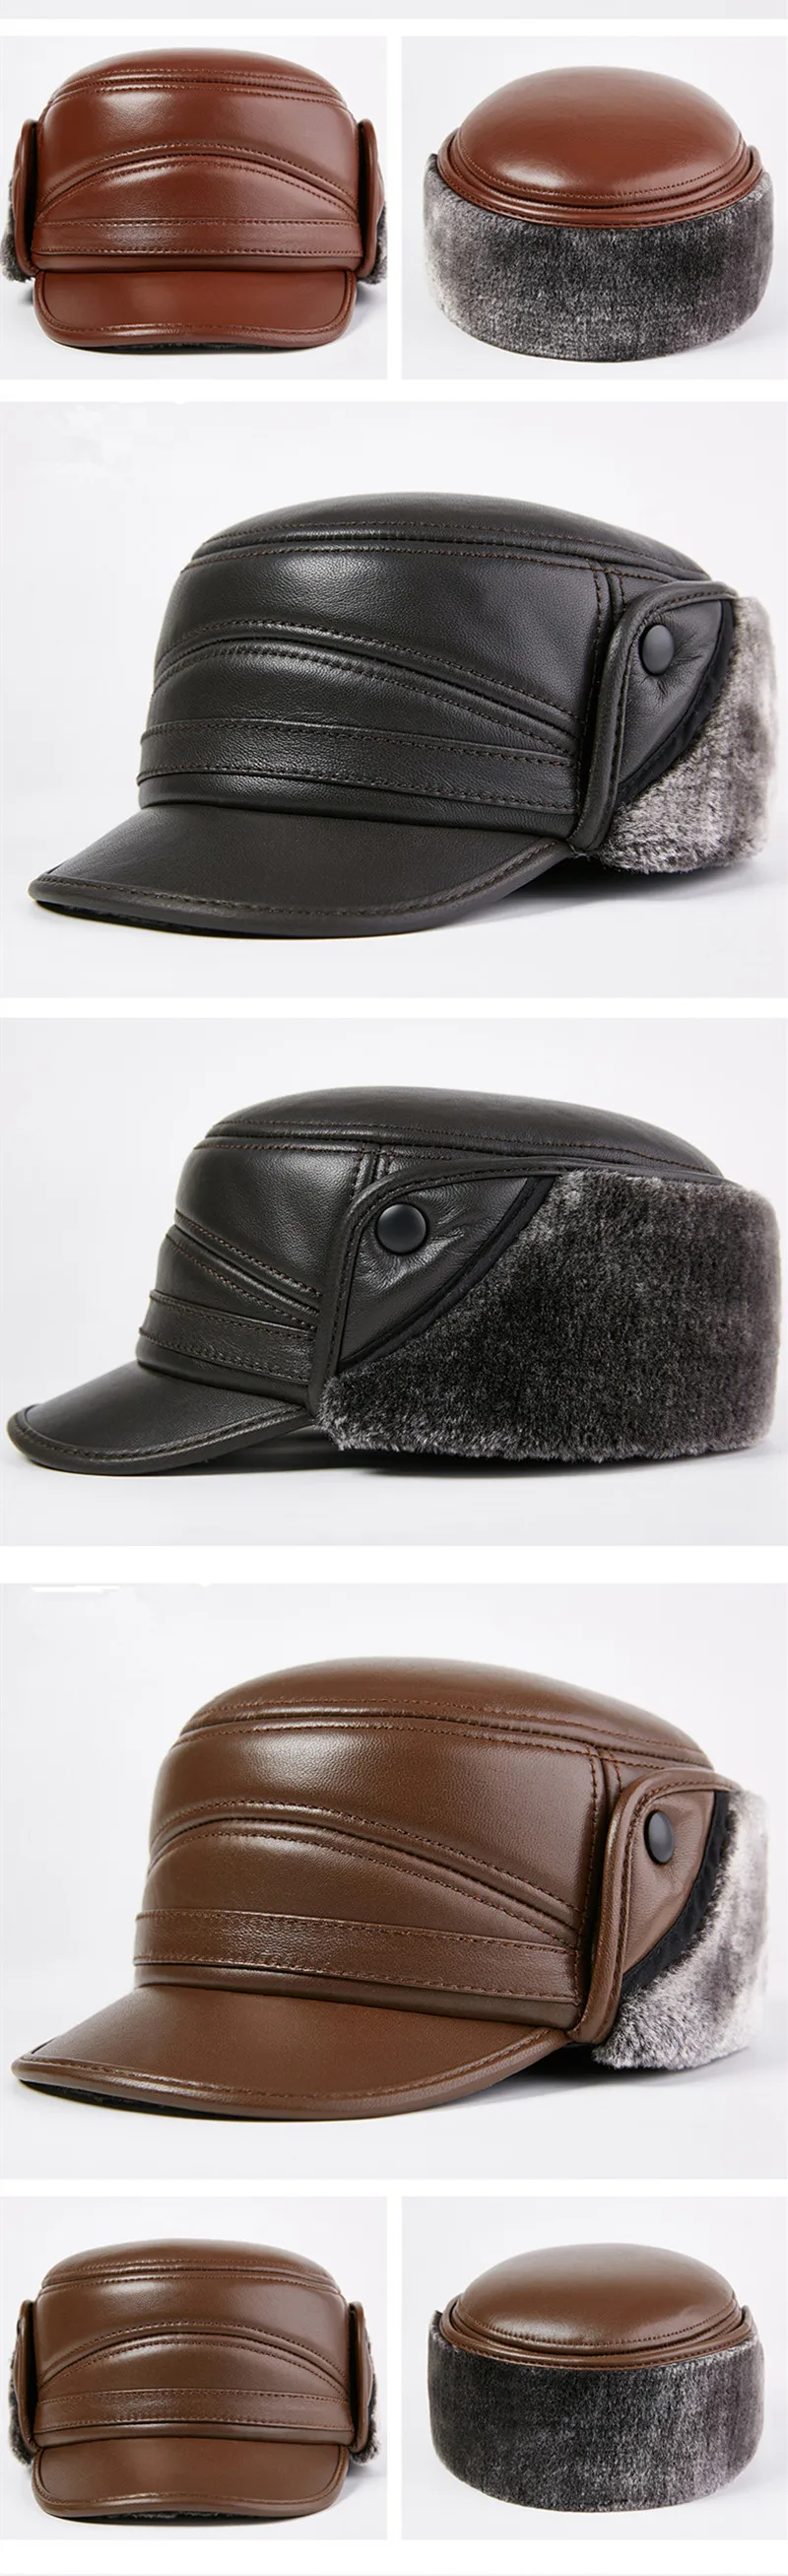 SHALUOTAOTAO мужские плоские кепки шляпа из натуральной кожи тренд качество овчины армейские кепки утепленные бархатные наушники бренд s